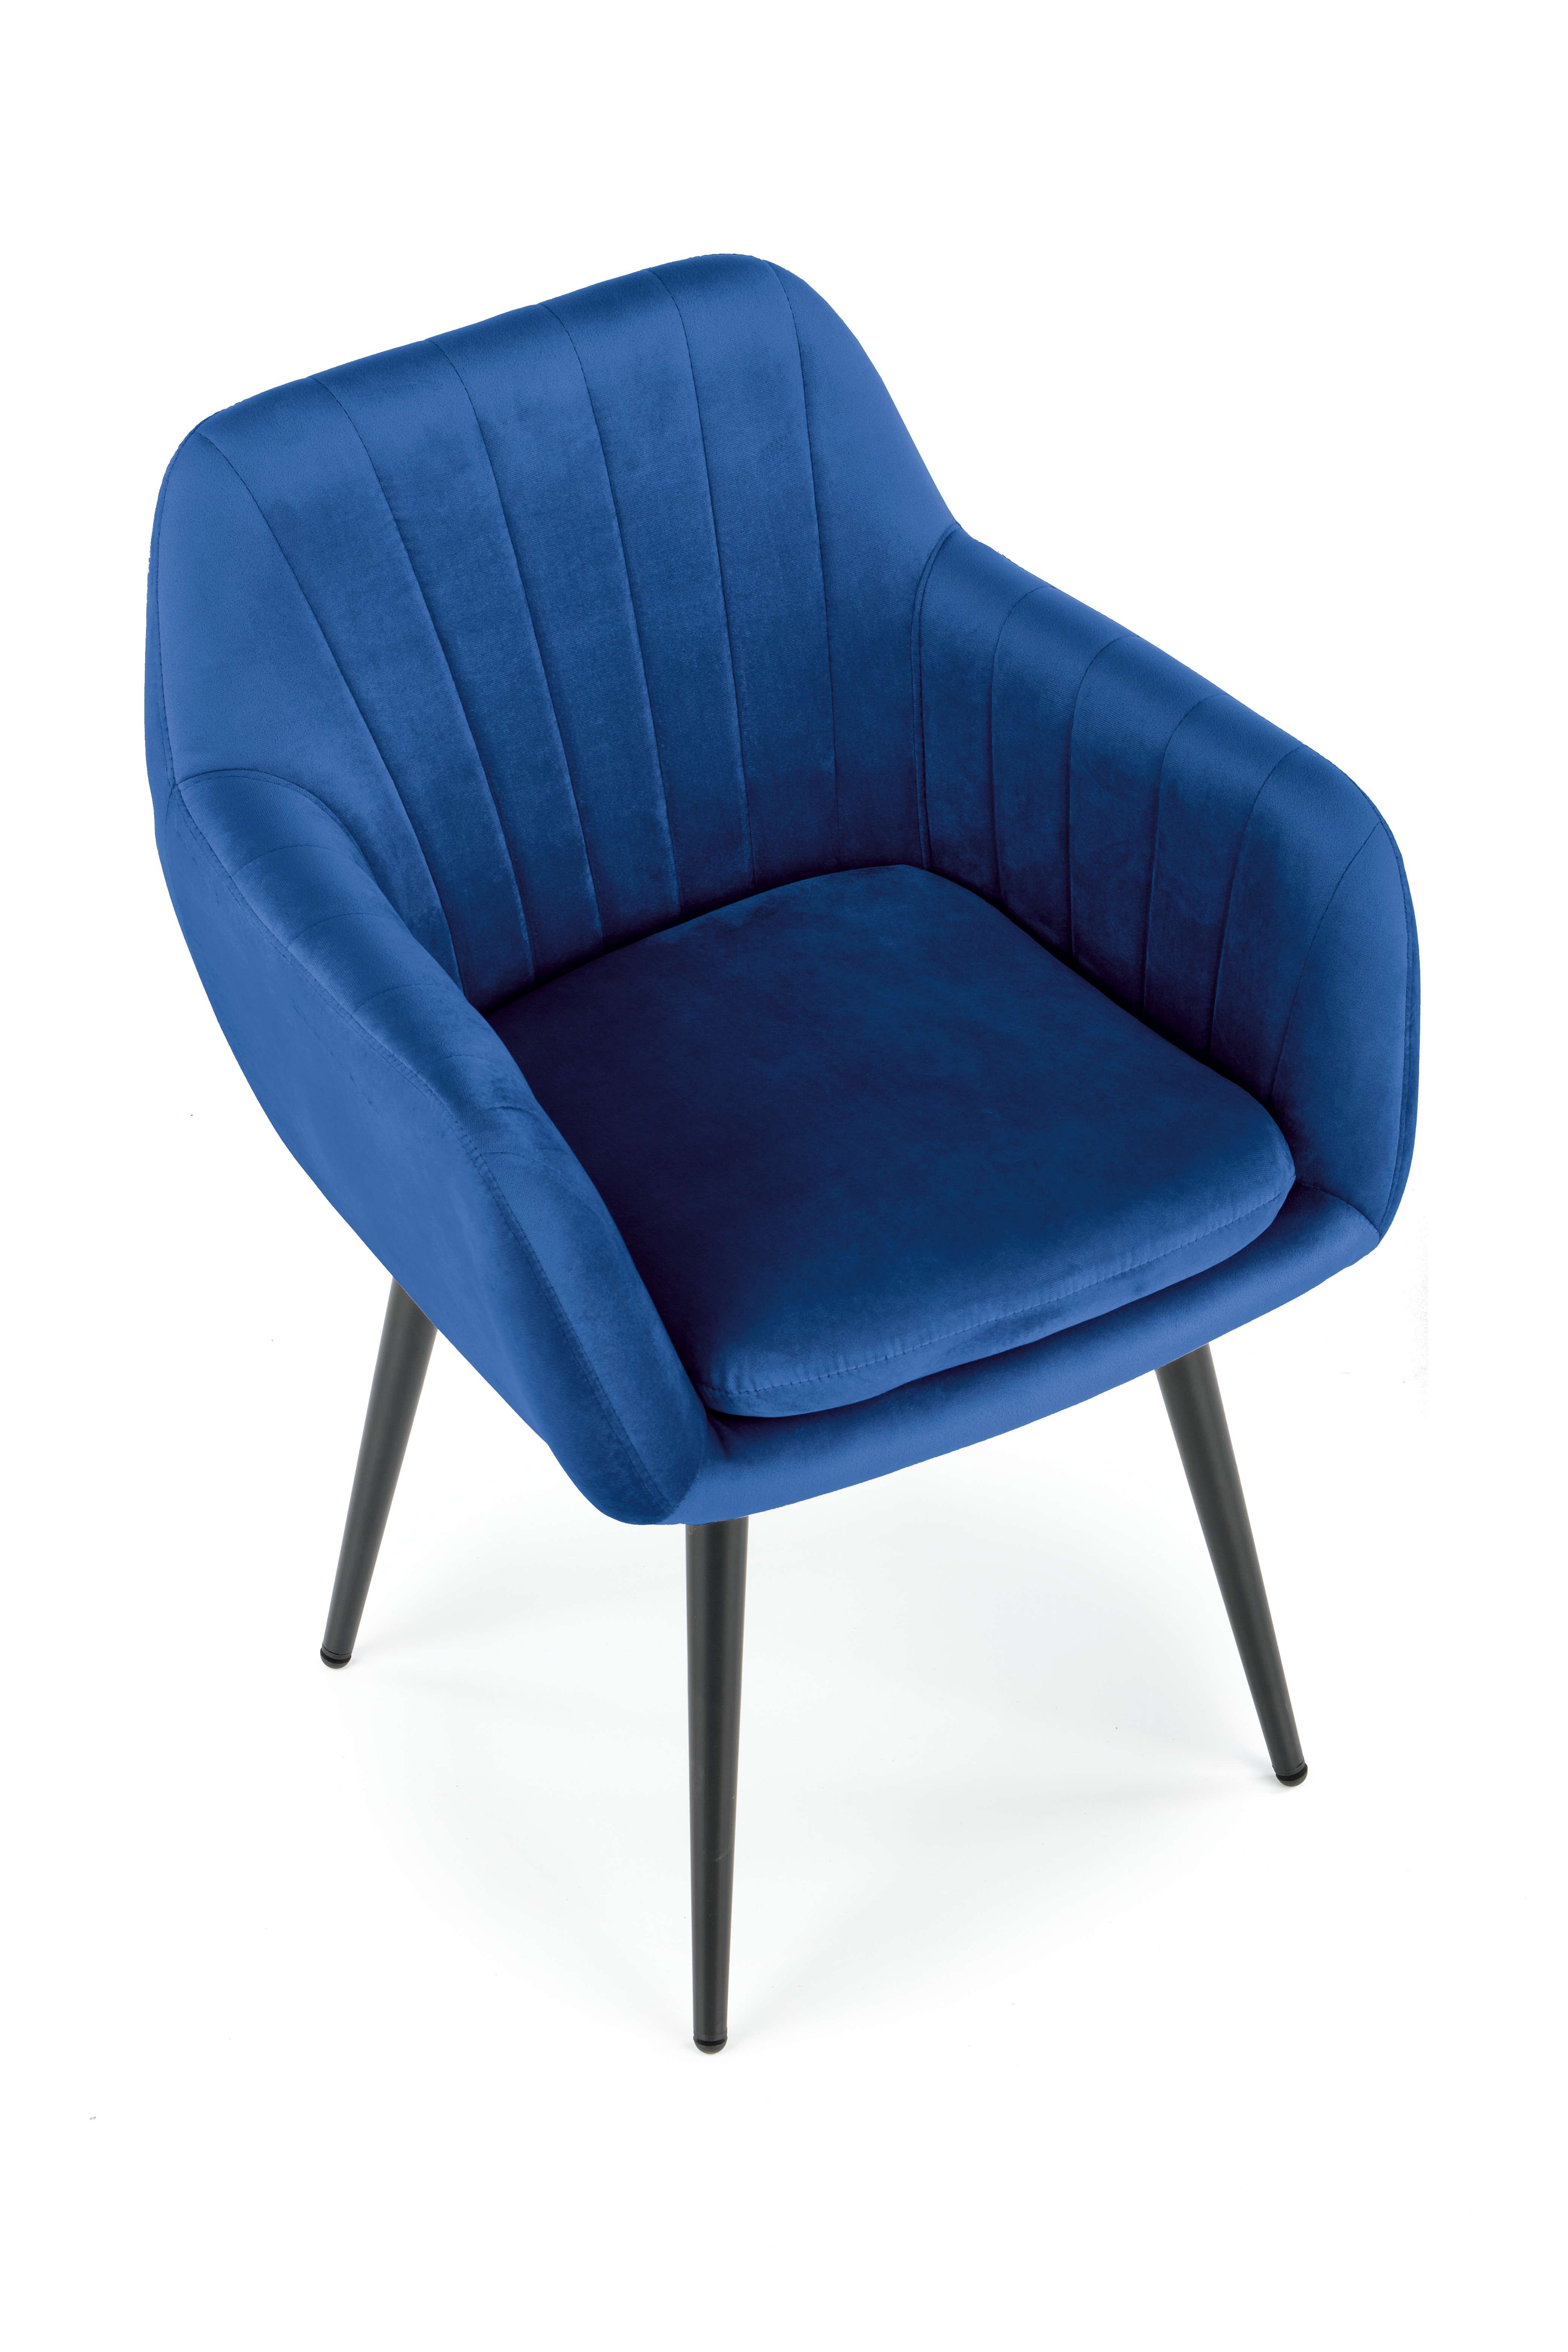 K429 Židle tmavě modrý (1p=2szt) k429 Židle tmavě modrý